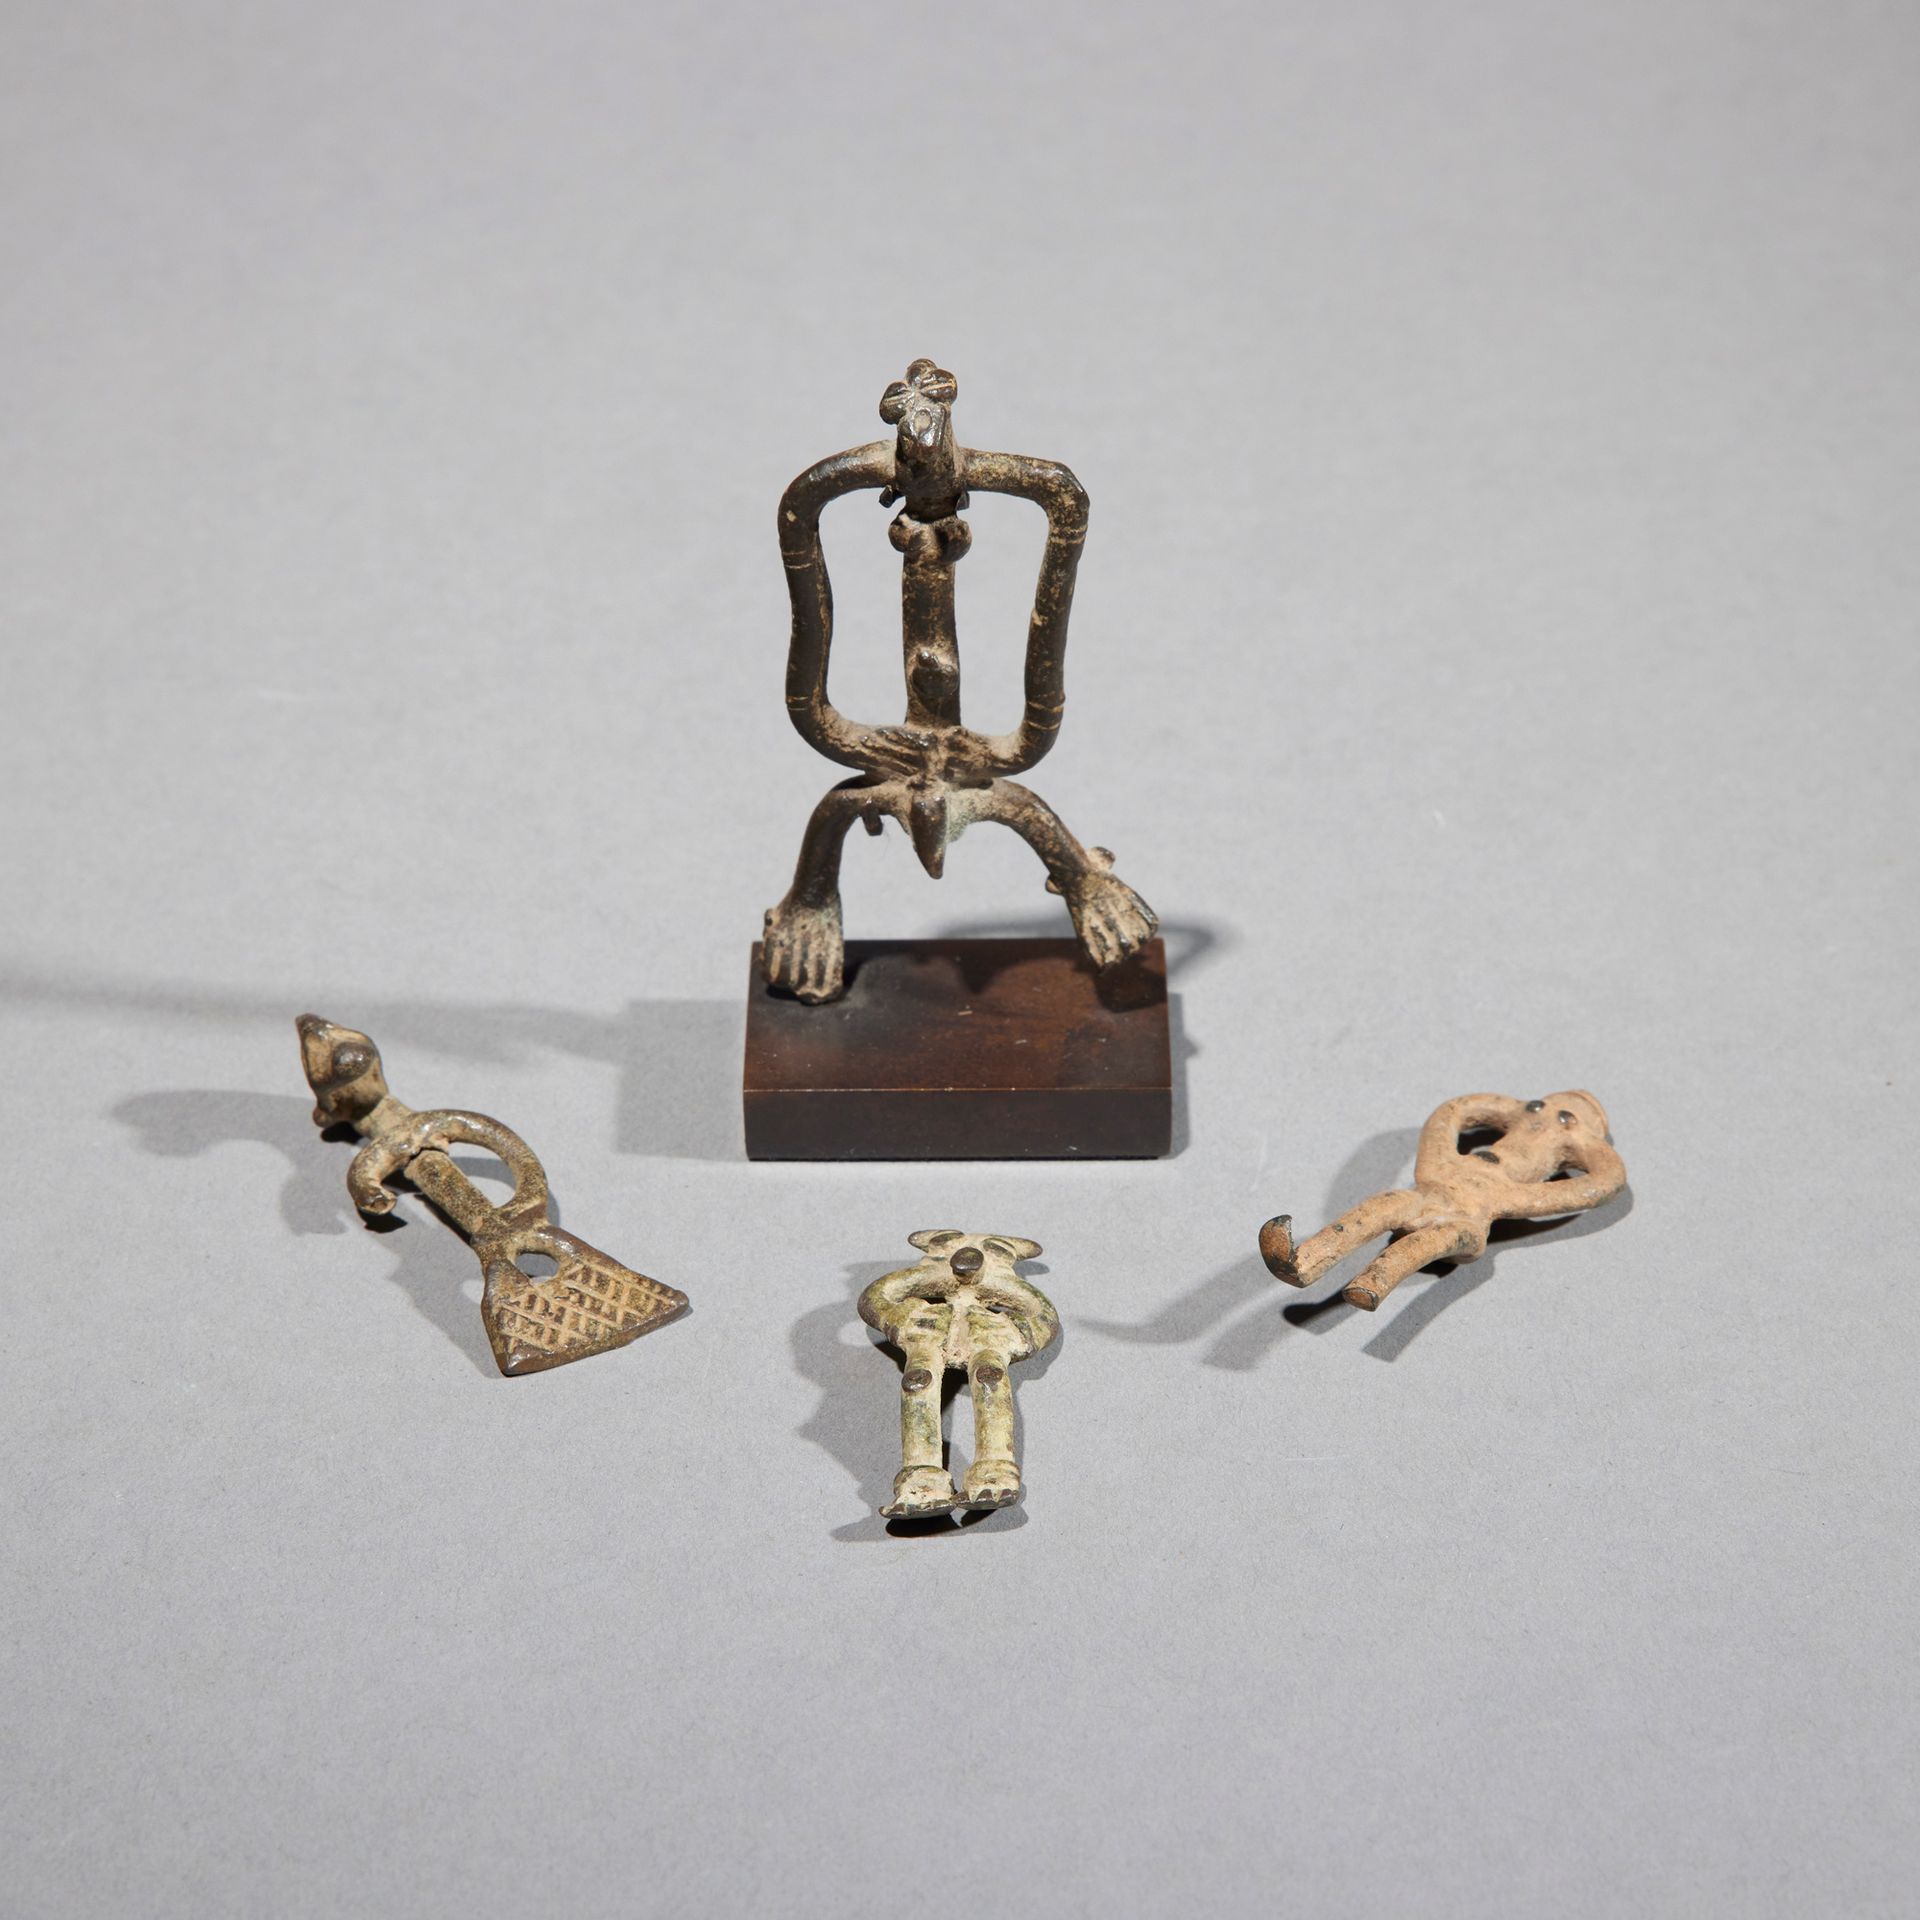 Null 四个塞努弗护身符

象牙海岸

铜质

H.4.3至7.1厘米



一套四件塞努弗铜制护身符，显示拟人化的形象。